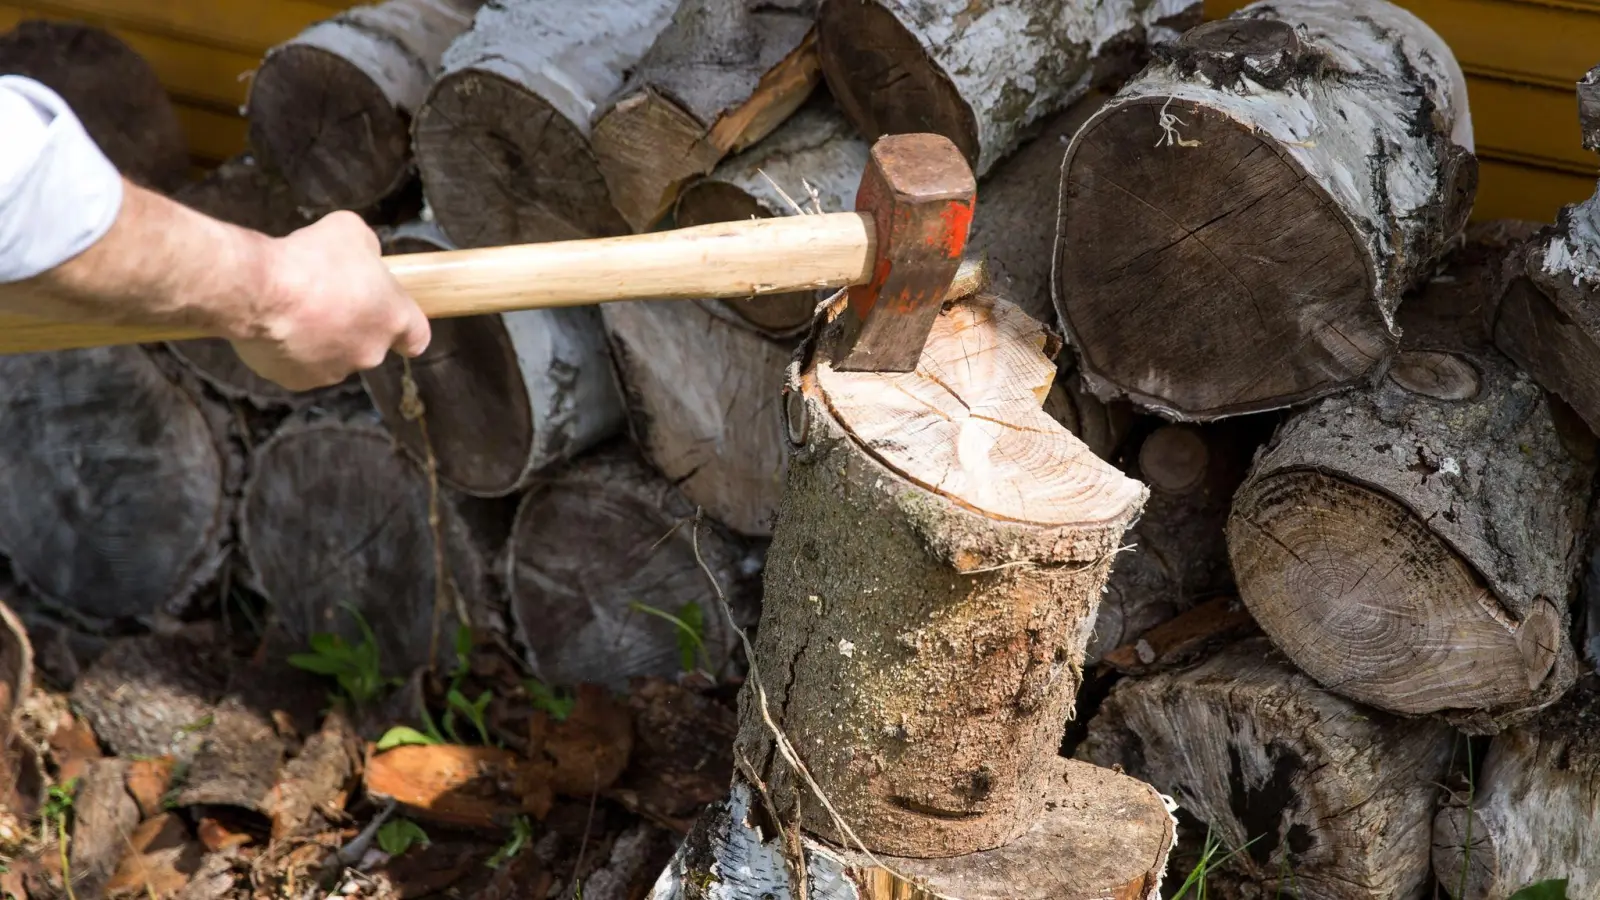 Frisch geschlagenes Holz kann nicht sofort verheizt werden, es muss erst trocknen - und zwar bis es weniger als 20 Prozent Wassergehalt hat. (Foto: Daniel Karmann/dpa/dpa-tmn)